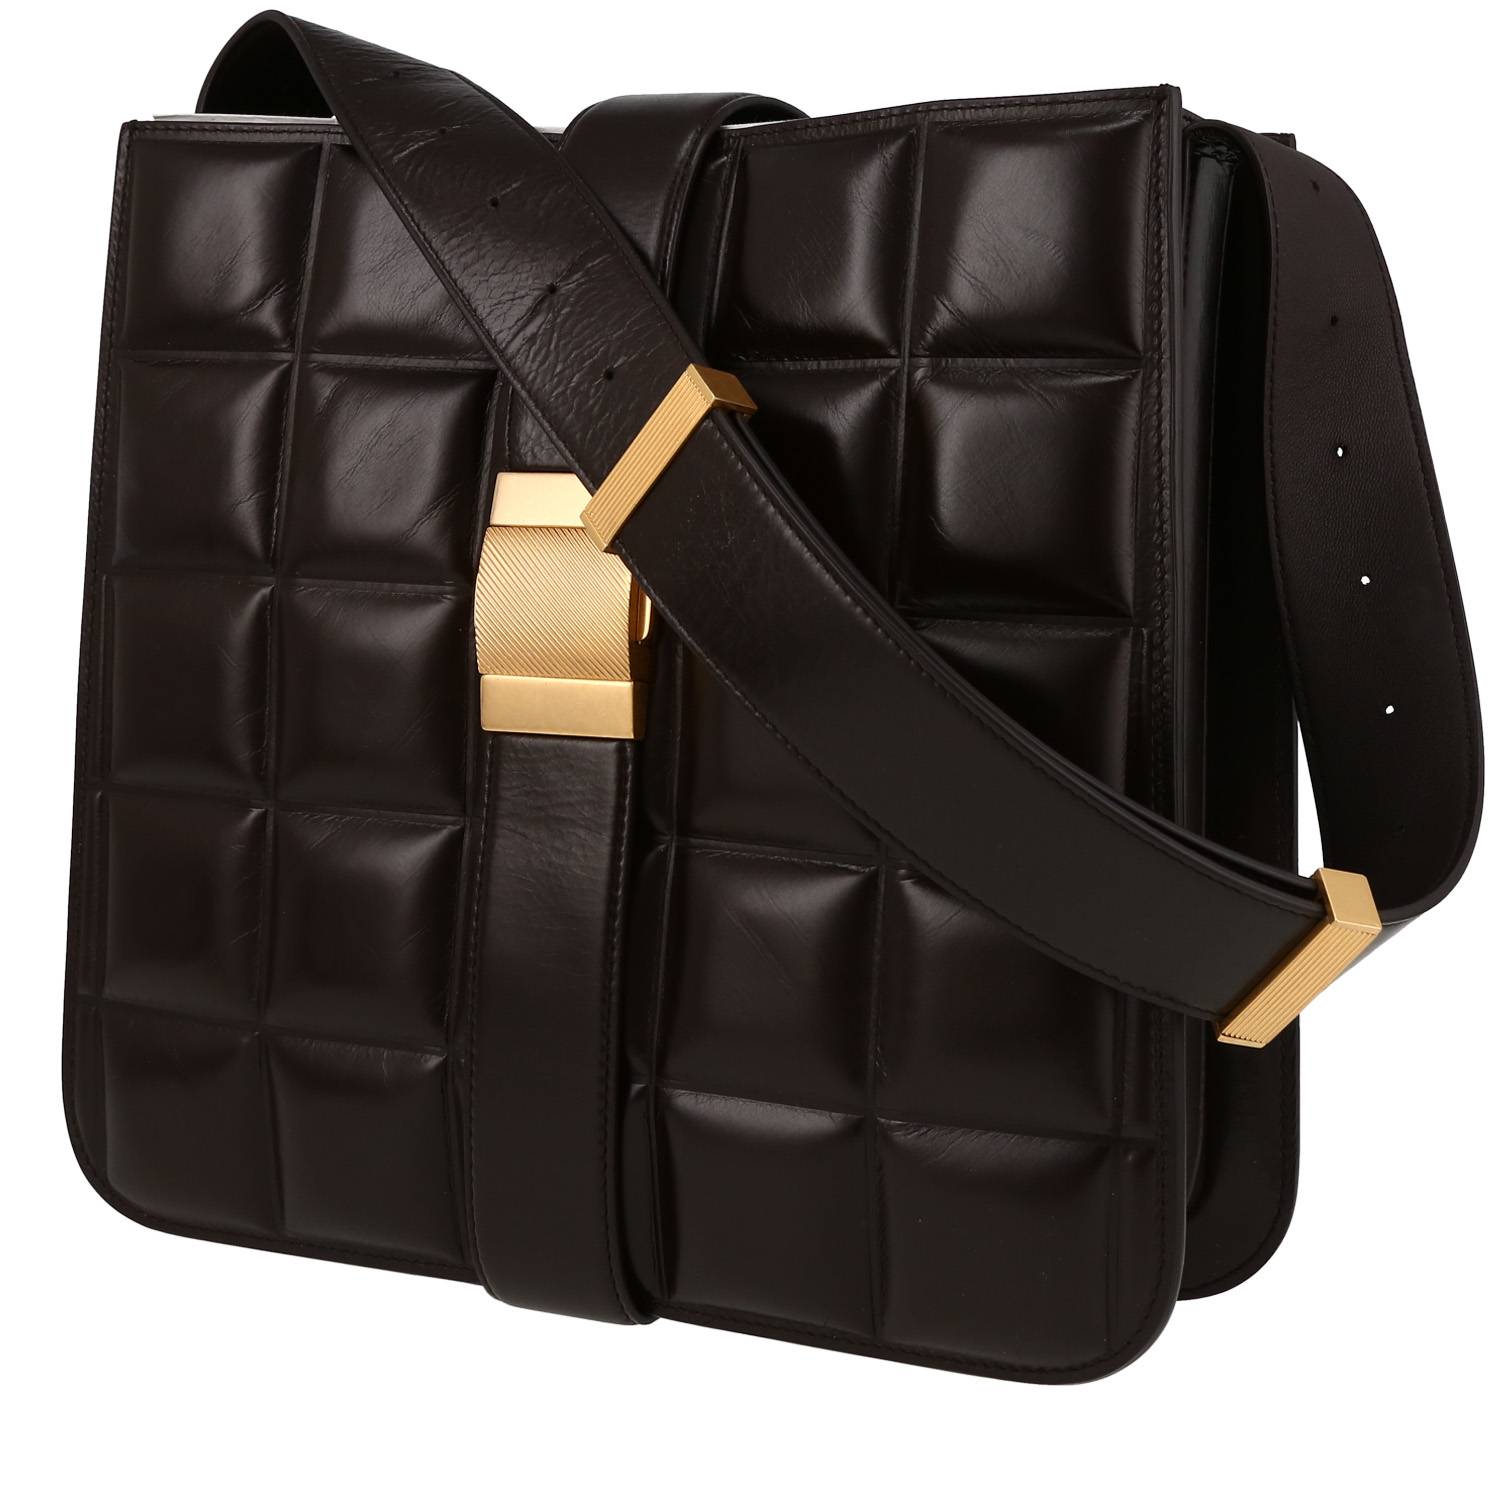 intrecciato leather shoulder bag bottega